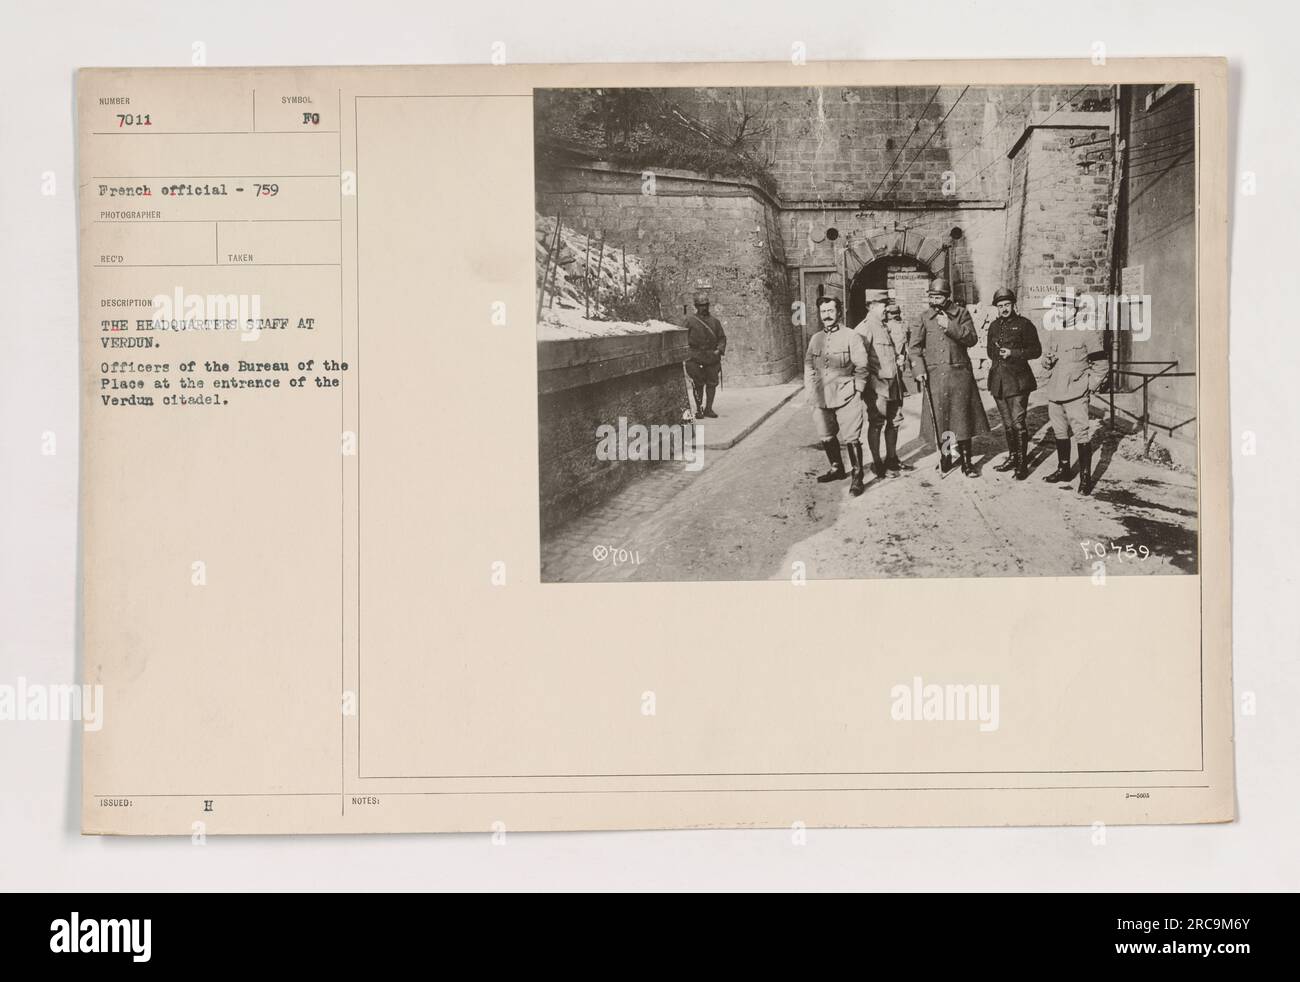 Una fotografia che raffigura lo staff del quartier generale a Verdun durante la prima guerra mondiale. L'immagine mostra gli ufficiali del Bureau of the Place di stanza all'ingresso del Verdun oftadel. Foto Stock